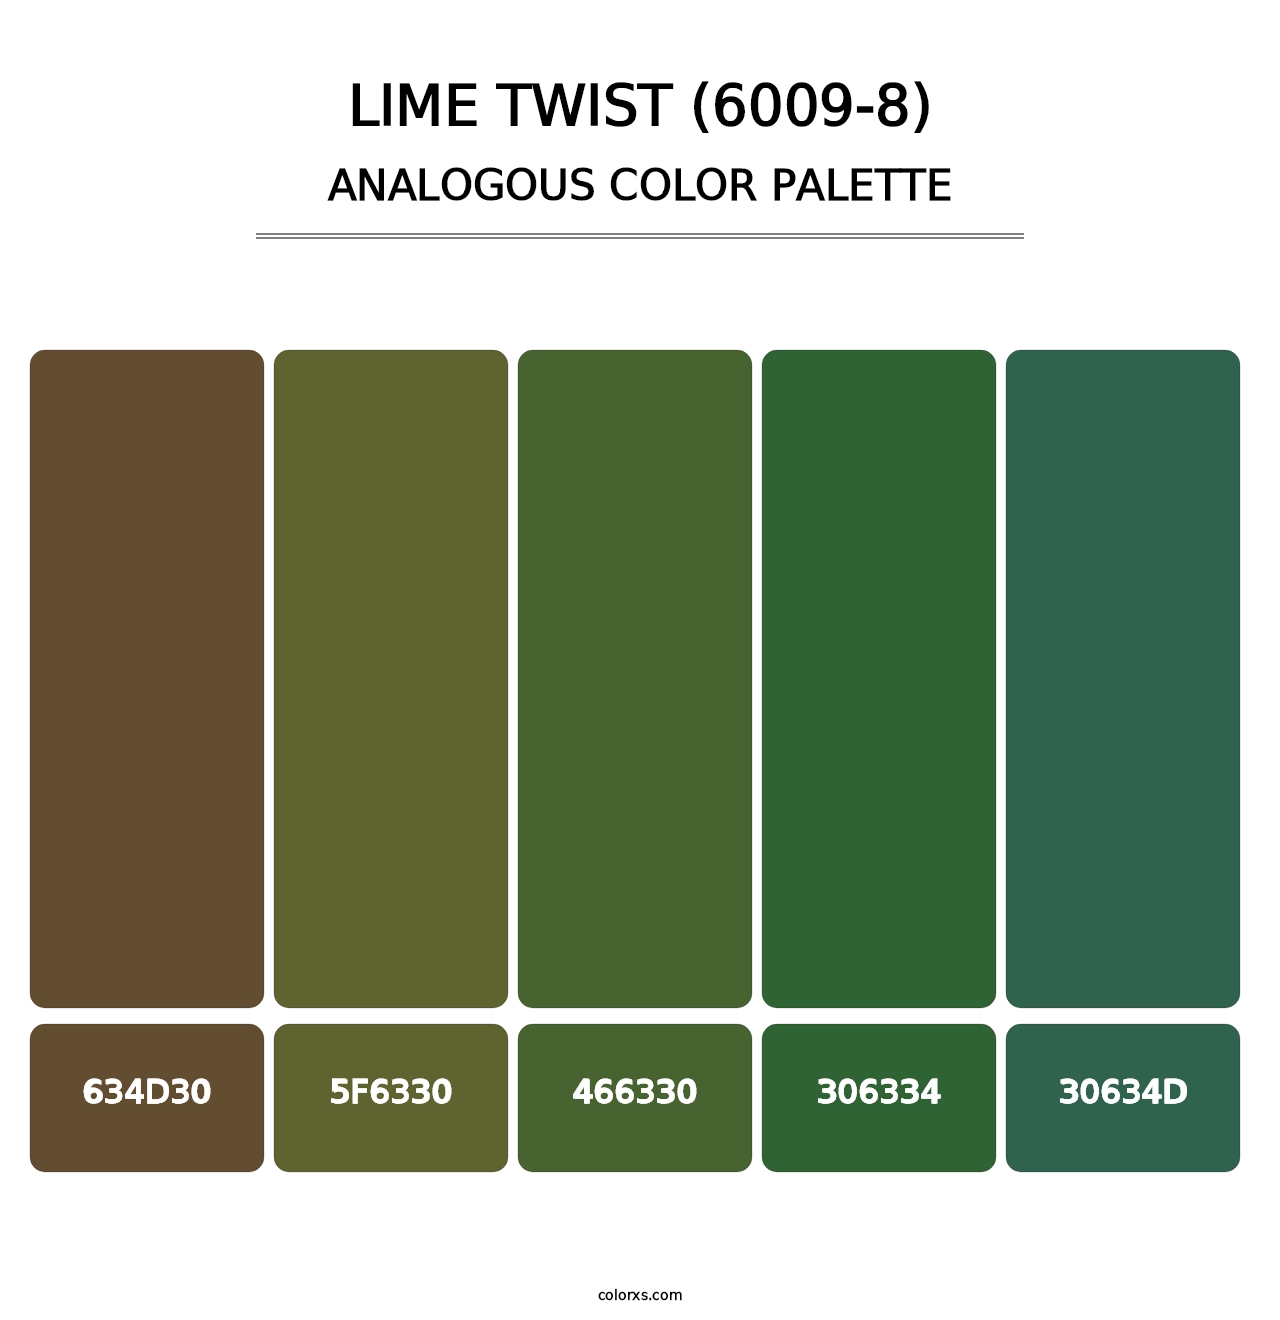 Lime Twist (6009-8) - Analogous Color Palette